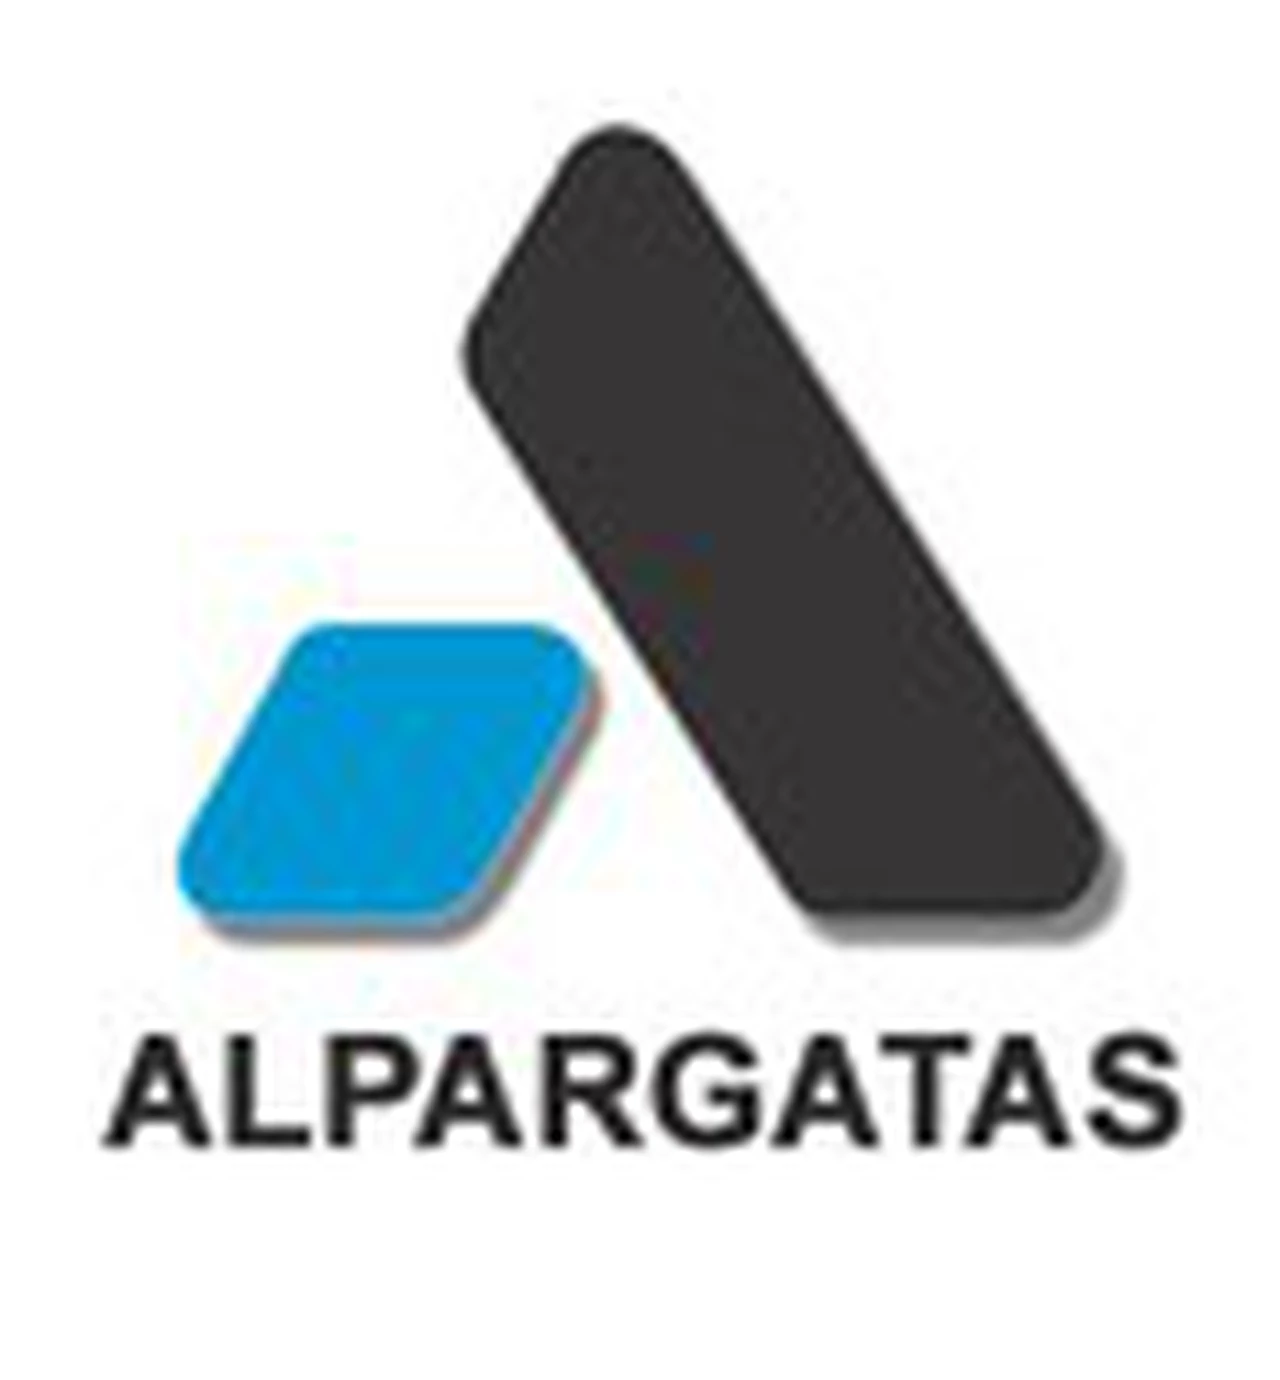 Alpargatas se desprende de su ex fábrica de Barracas